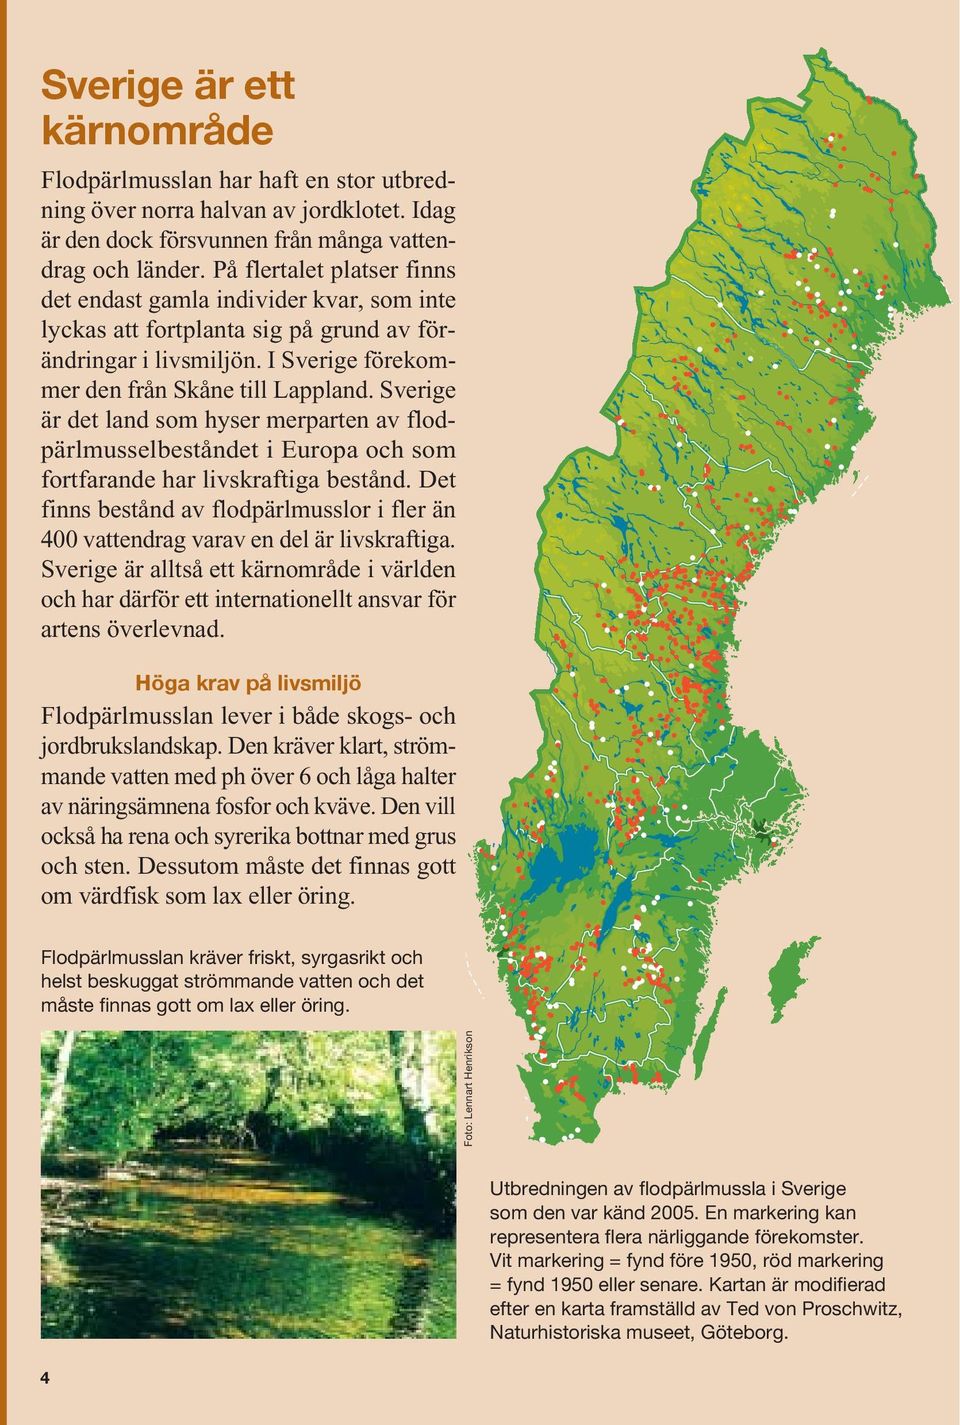 Sverige är det land som hyser merparten av flodpärlmusselbeståndet i Europa och som fortfarande har livskraftiga bestånd.